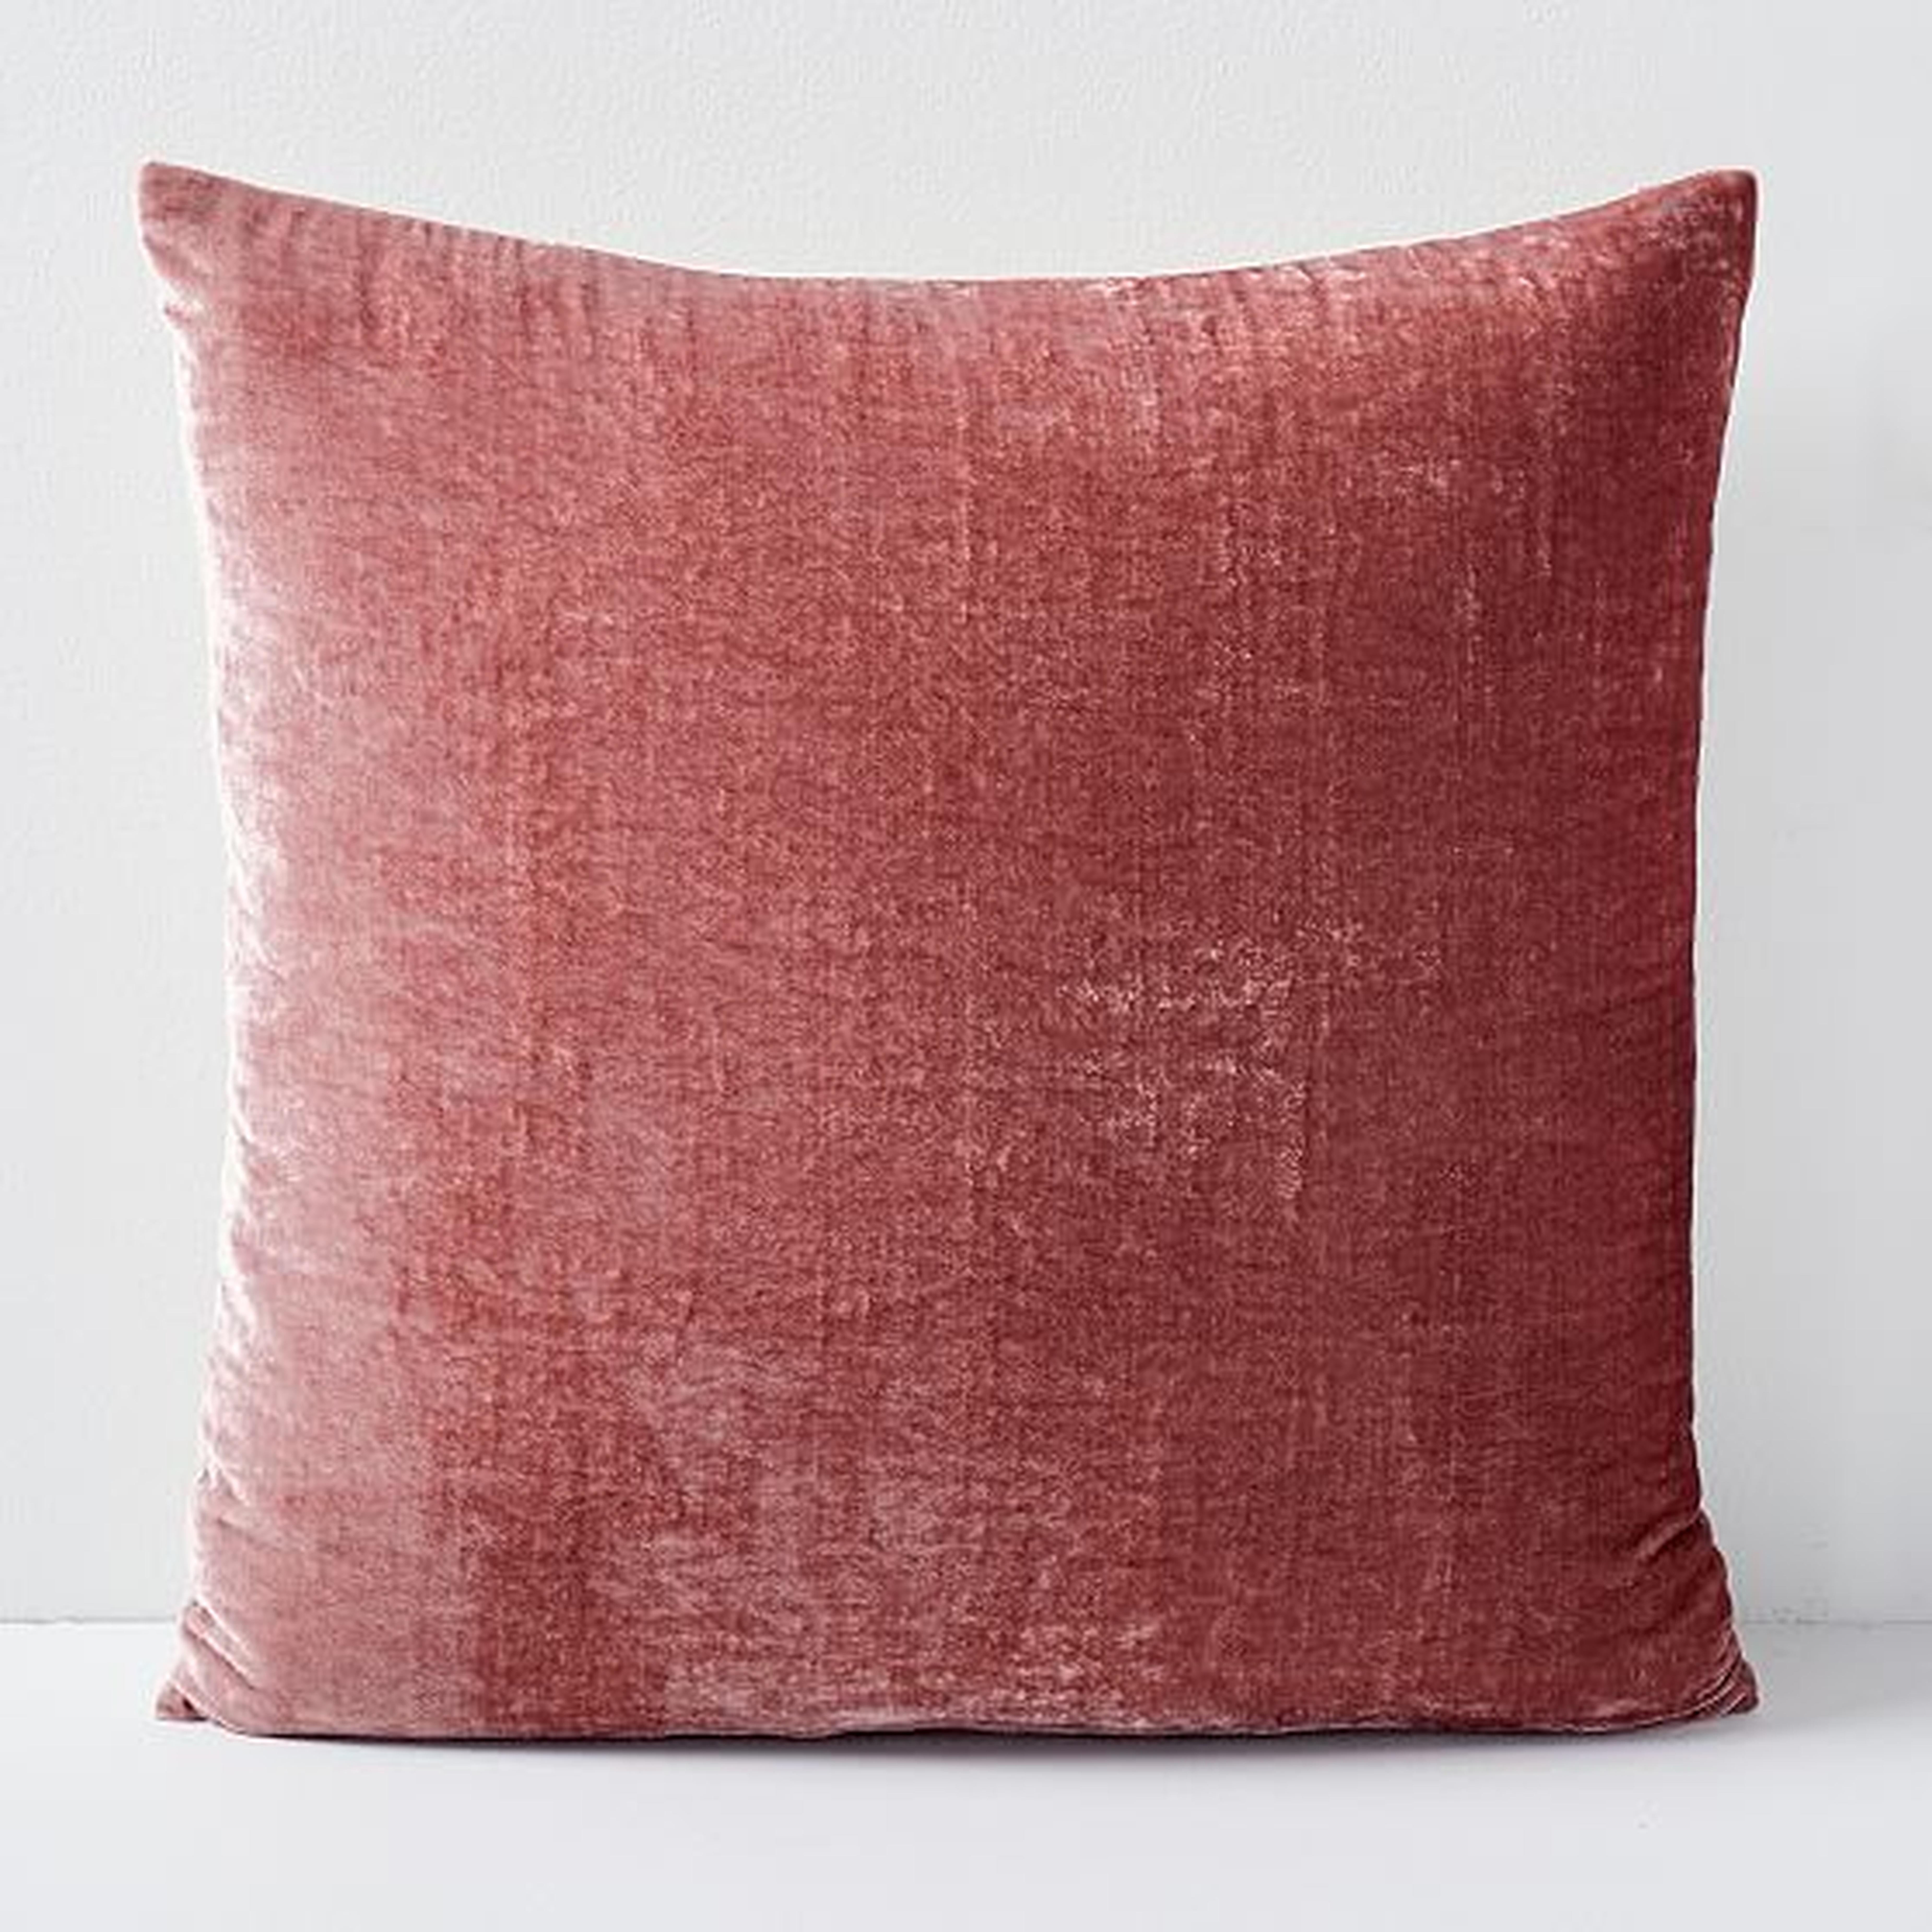 Lush Velvet Pillow Cover, Pink Grapefruit, 24"x24" - West Elm